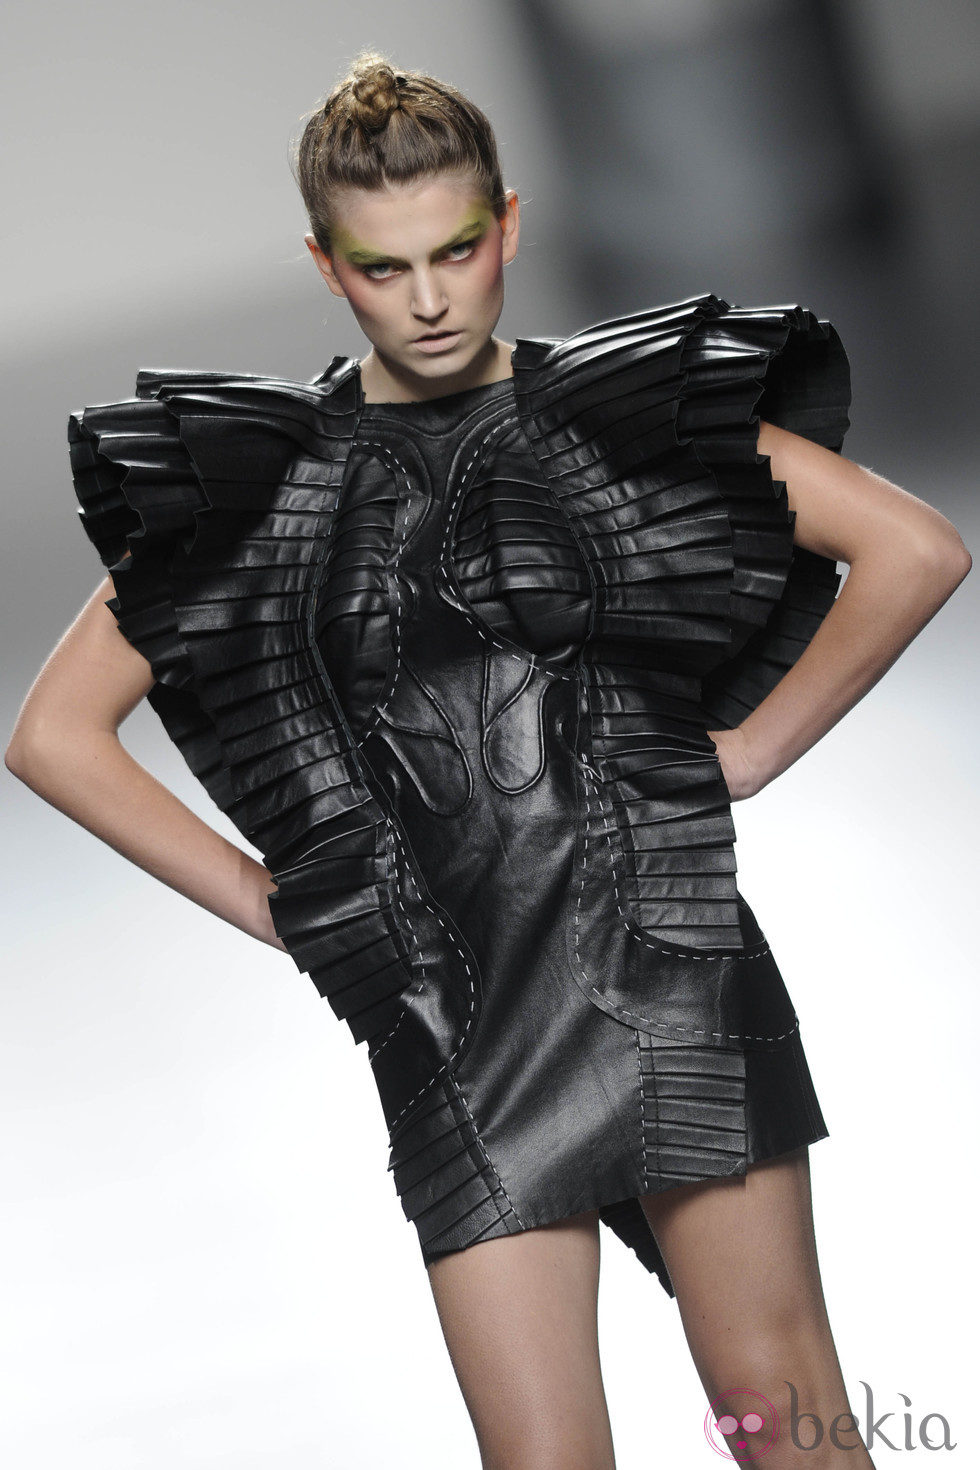 Vestido de cuero armado negro de la colección primavera/verano 2013 de Leyre Valiente